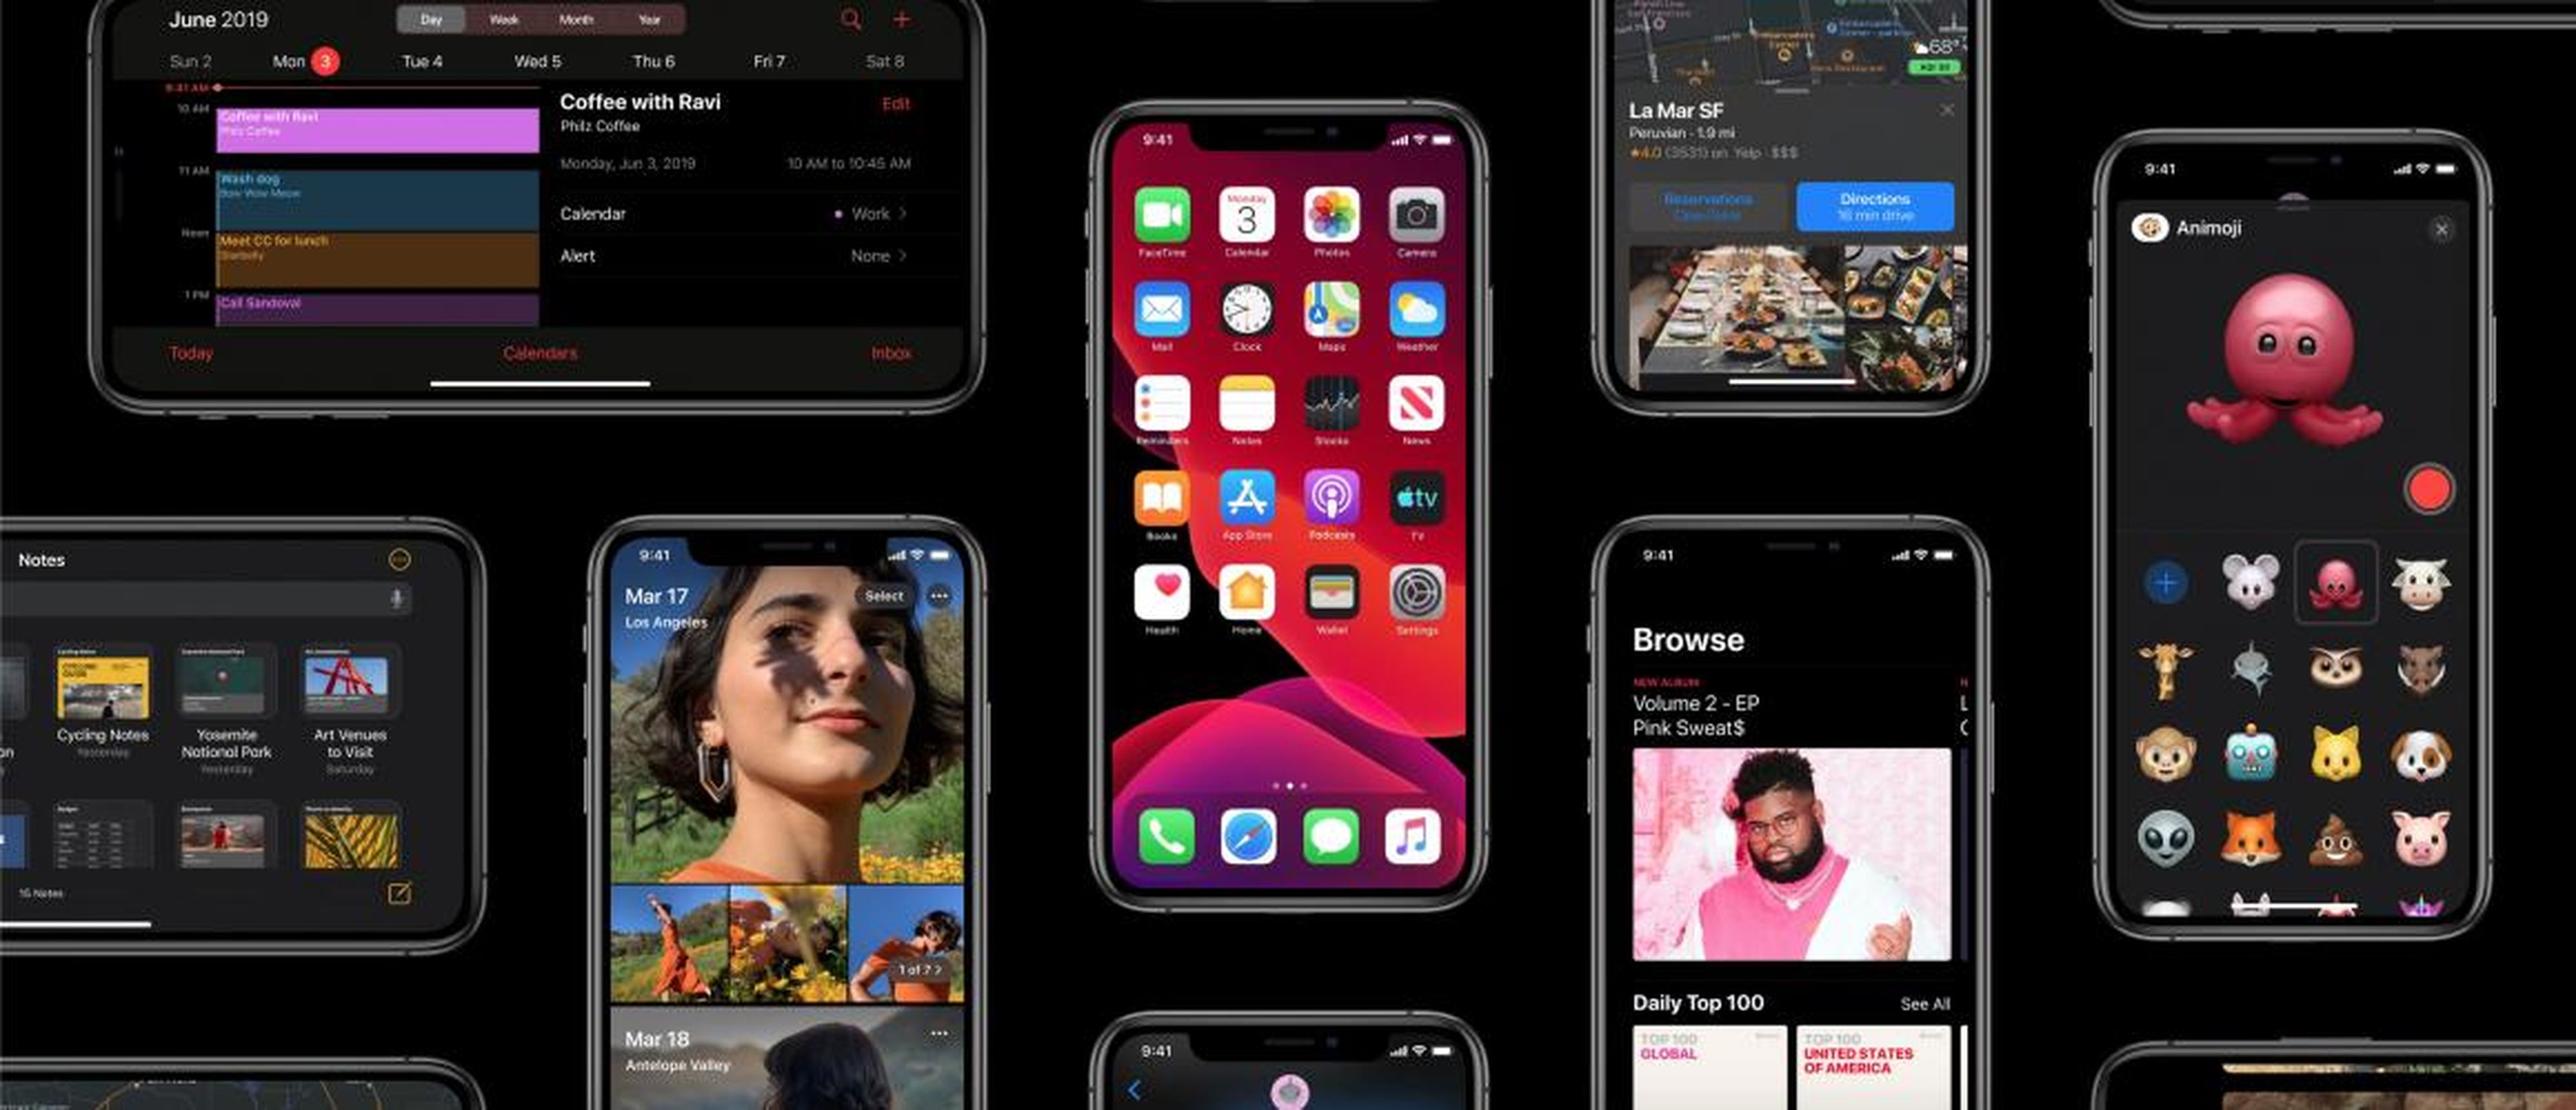 Apple lanzará su siguiente gran actualización para el software de iPhone el 19 de septiembre. 10 grandes características por las que merecerá la pena.